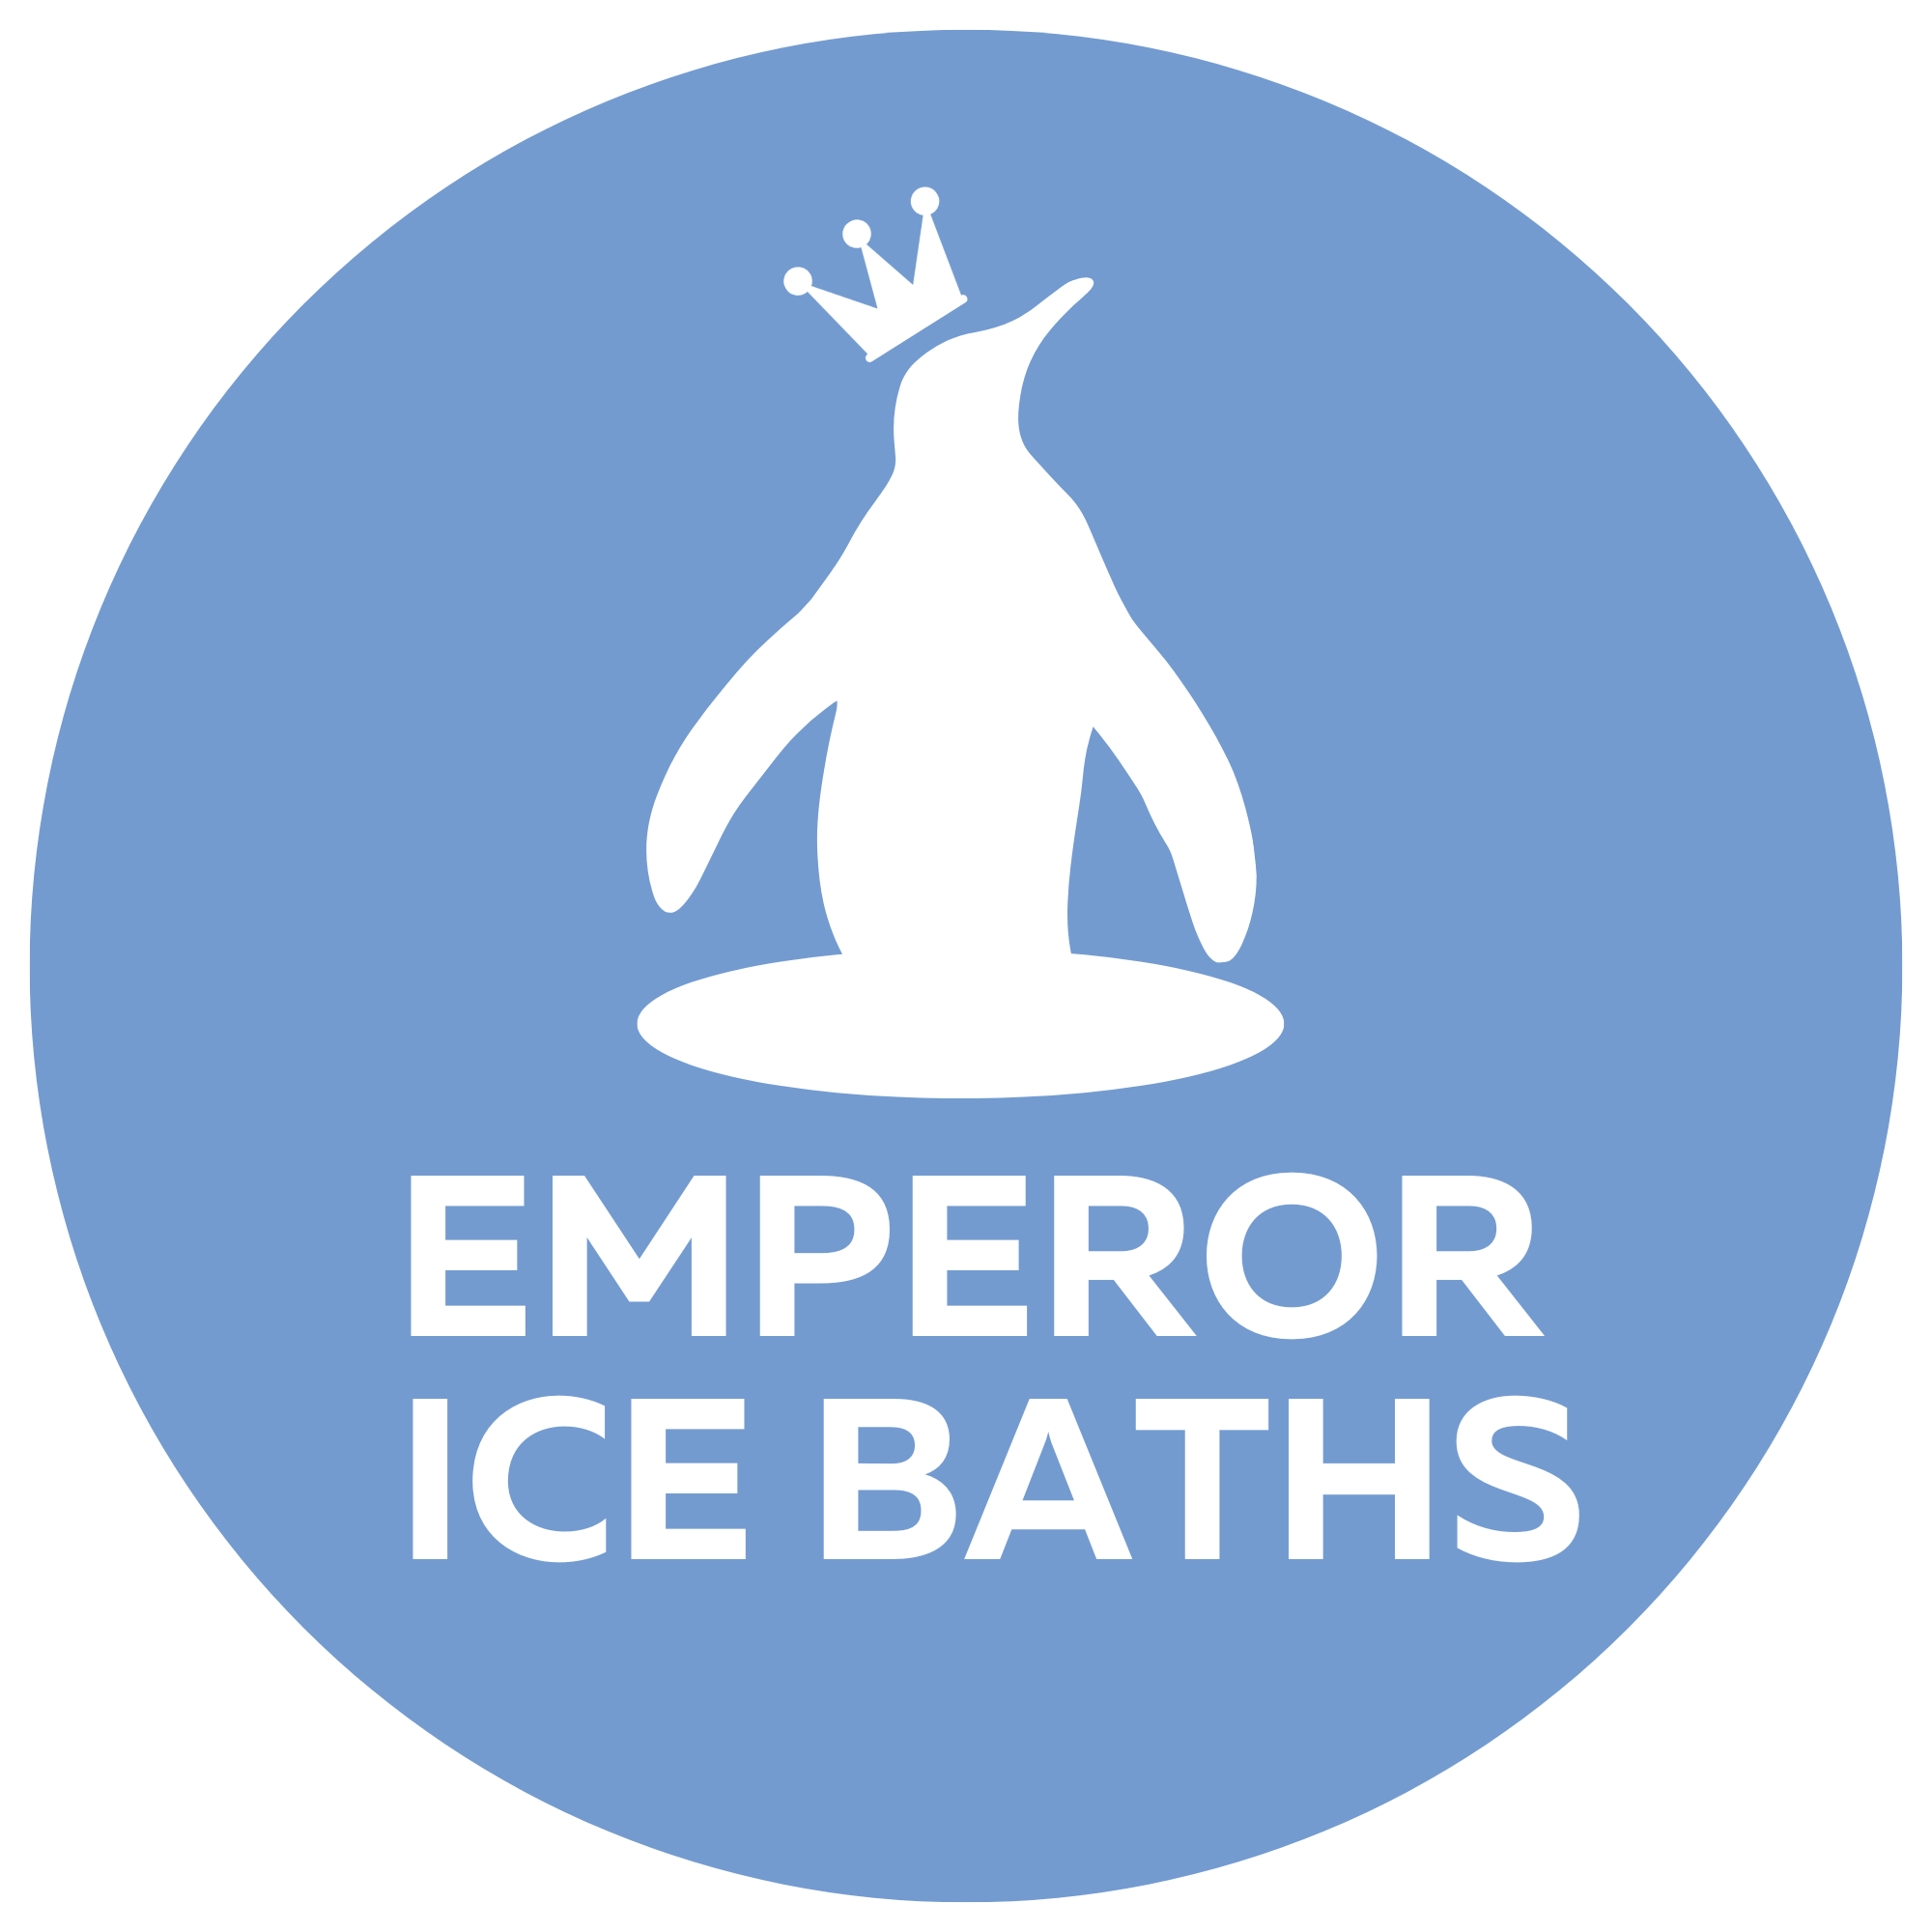 emperor ice baths circle logo